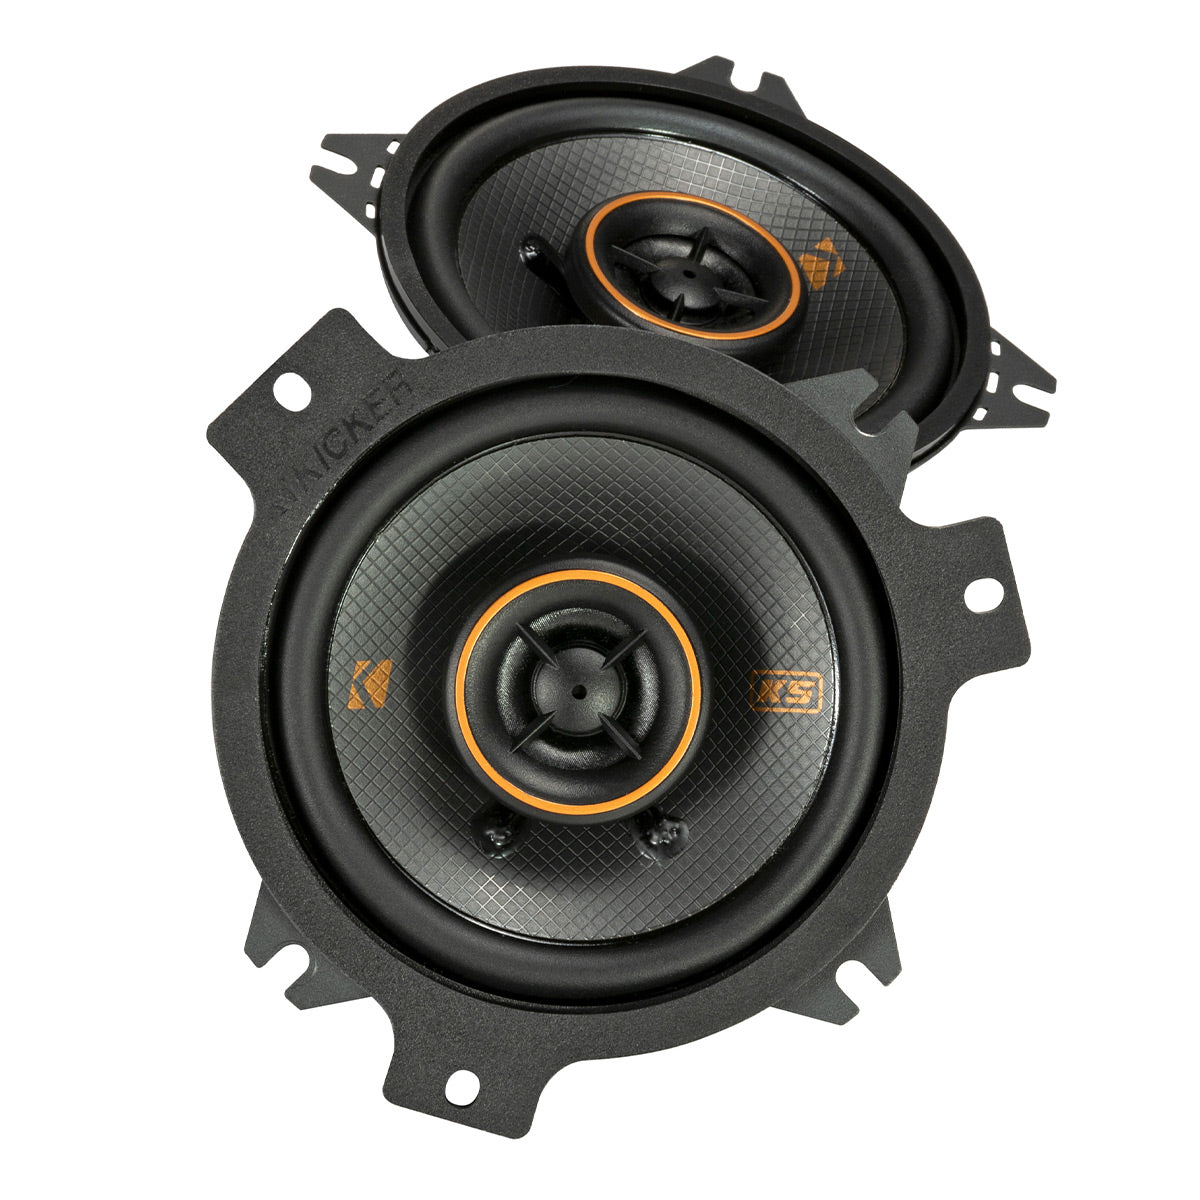 Kicker 51KSC404 4" KS Series Coaxial Speakers - Pair